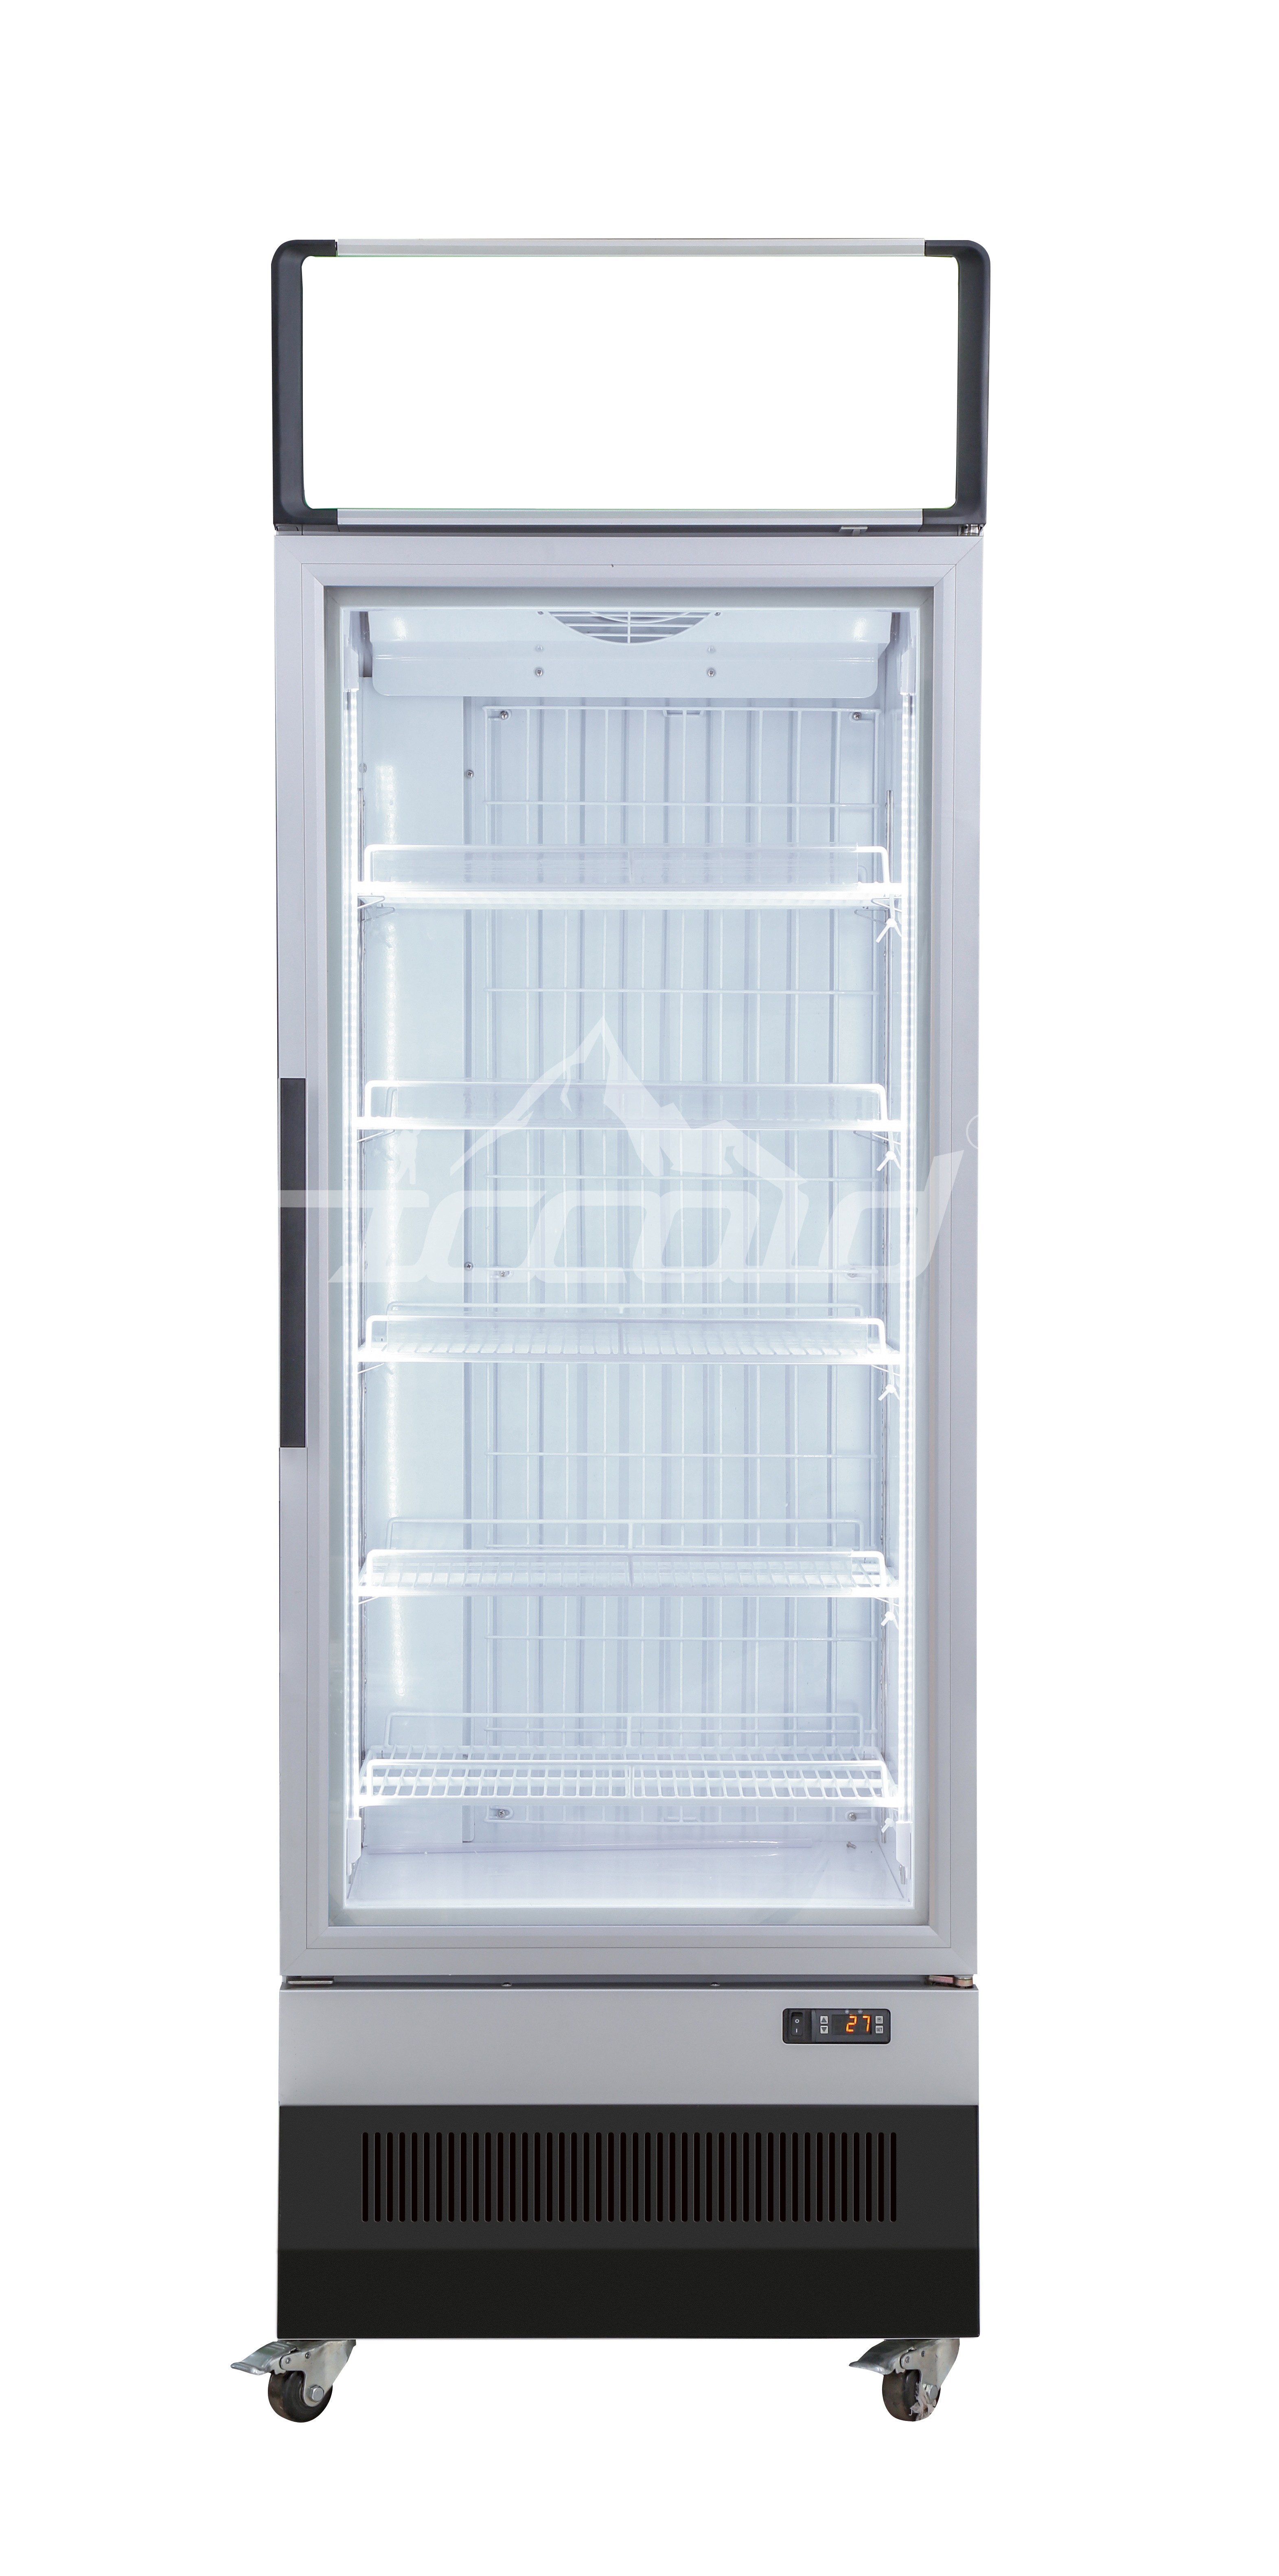 Vertical freezer 1door